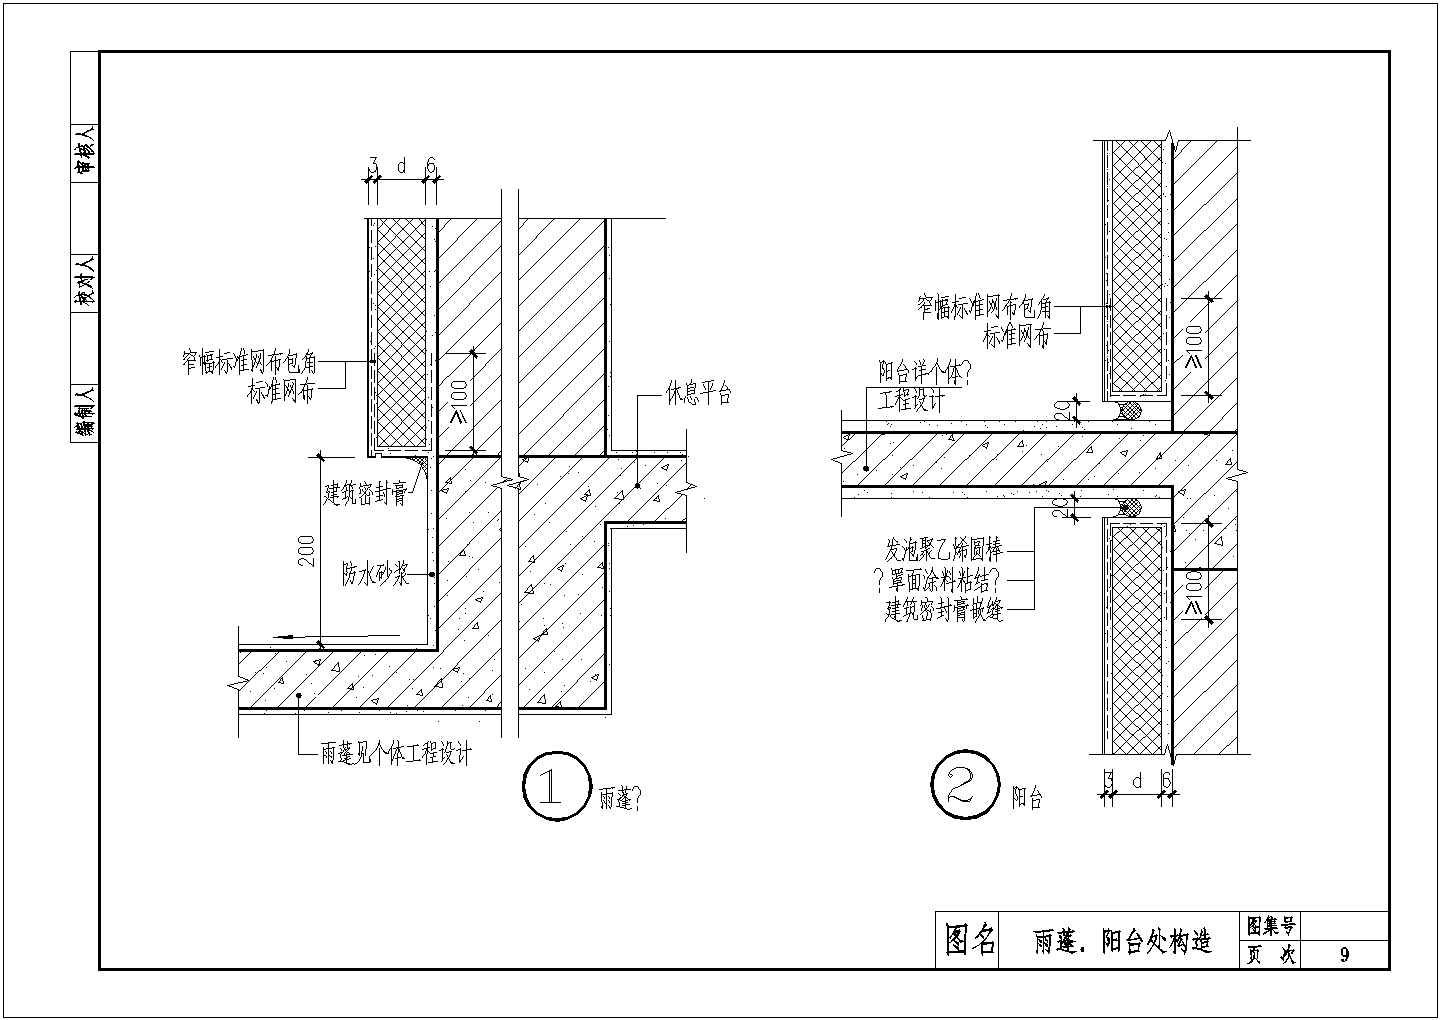 常见建筑外墙聚苯板外保温建筑构造施工图